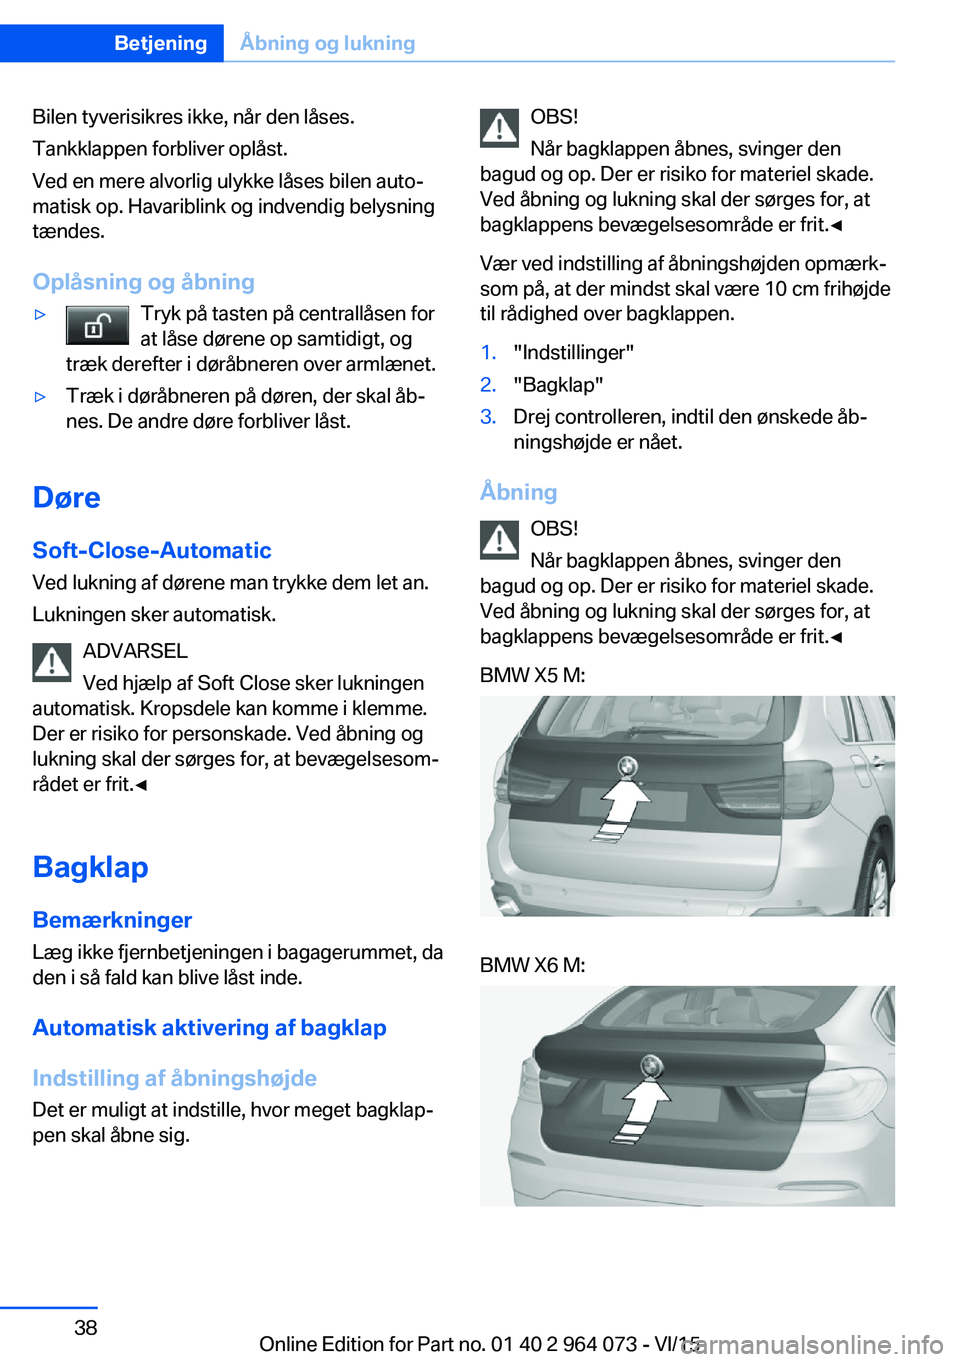 BMW X5 M 2016  InstruktionsbØger (in Danish) Bilen tyverisikres ikke, når den låses.
Tankklappen forbliver oplåst.
Ved en mere alvorlig ulykke låses bilen auto‐
matisk op. Havariblink og indvendig belysning
tændes.
Oplåsning og åbning�